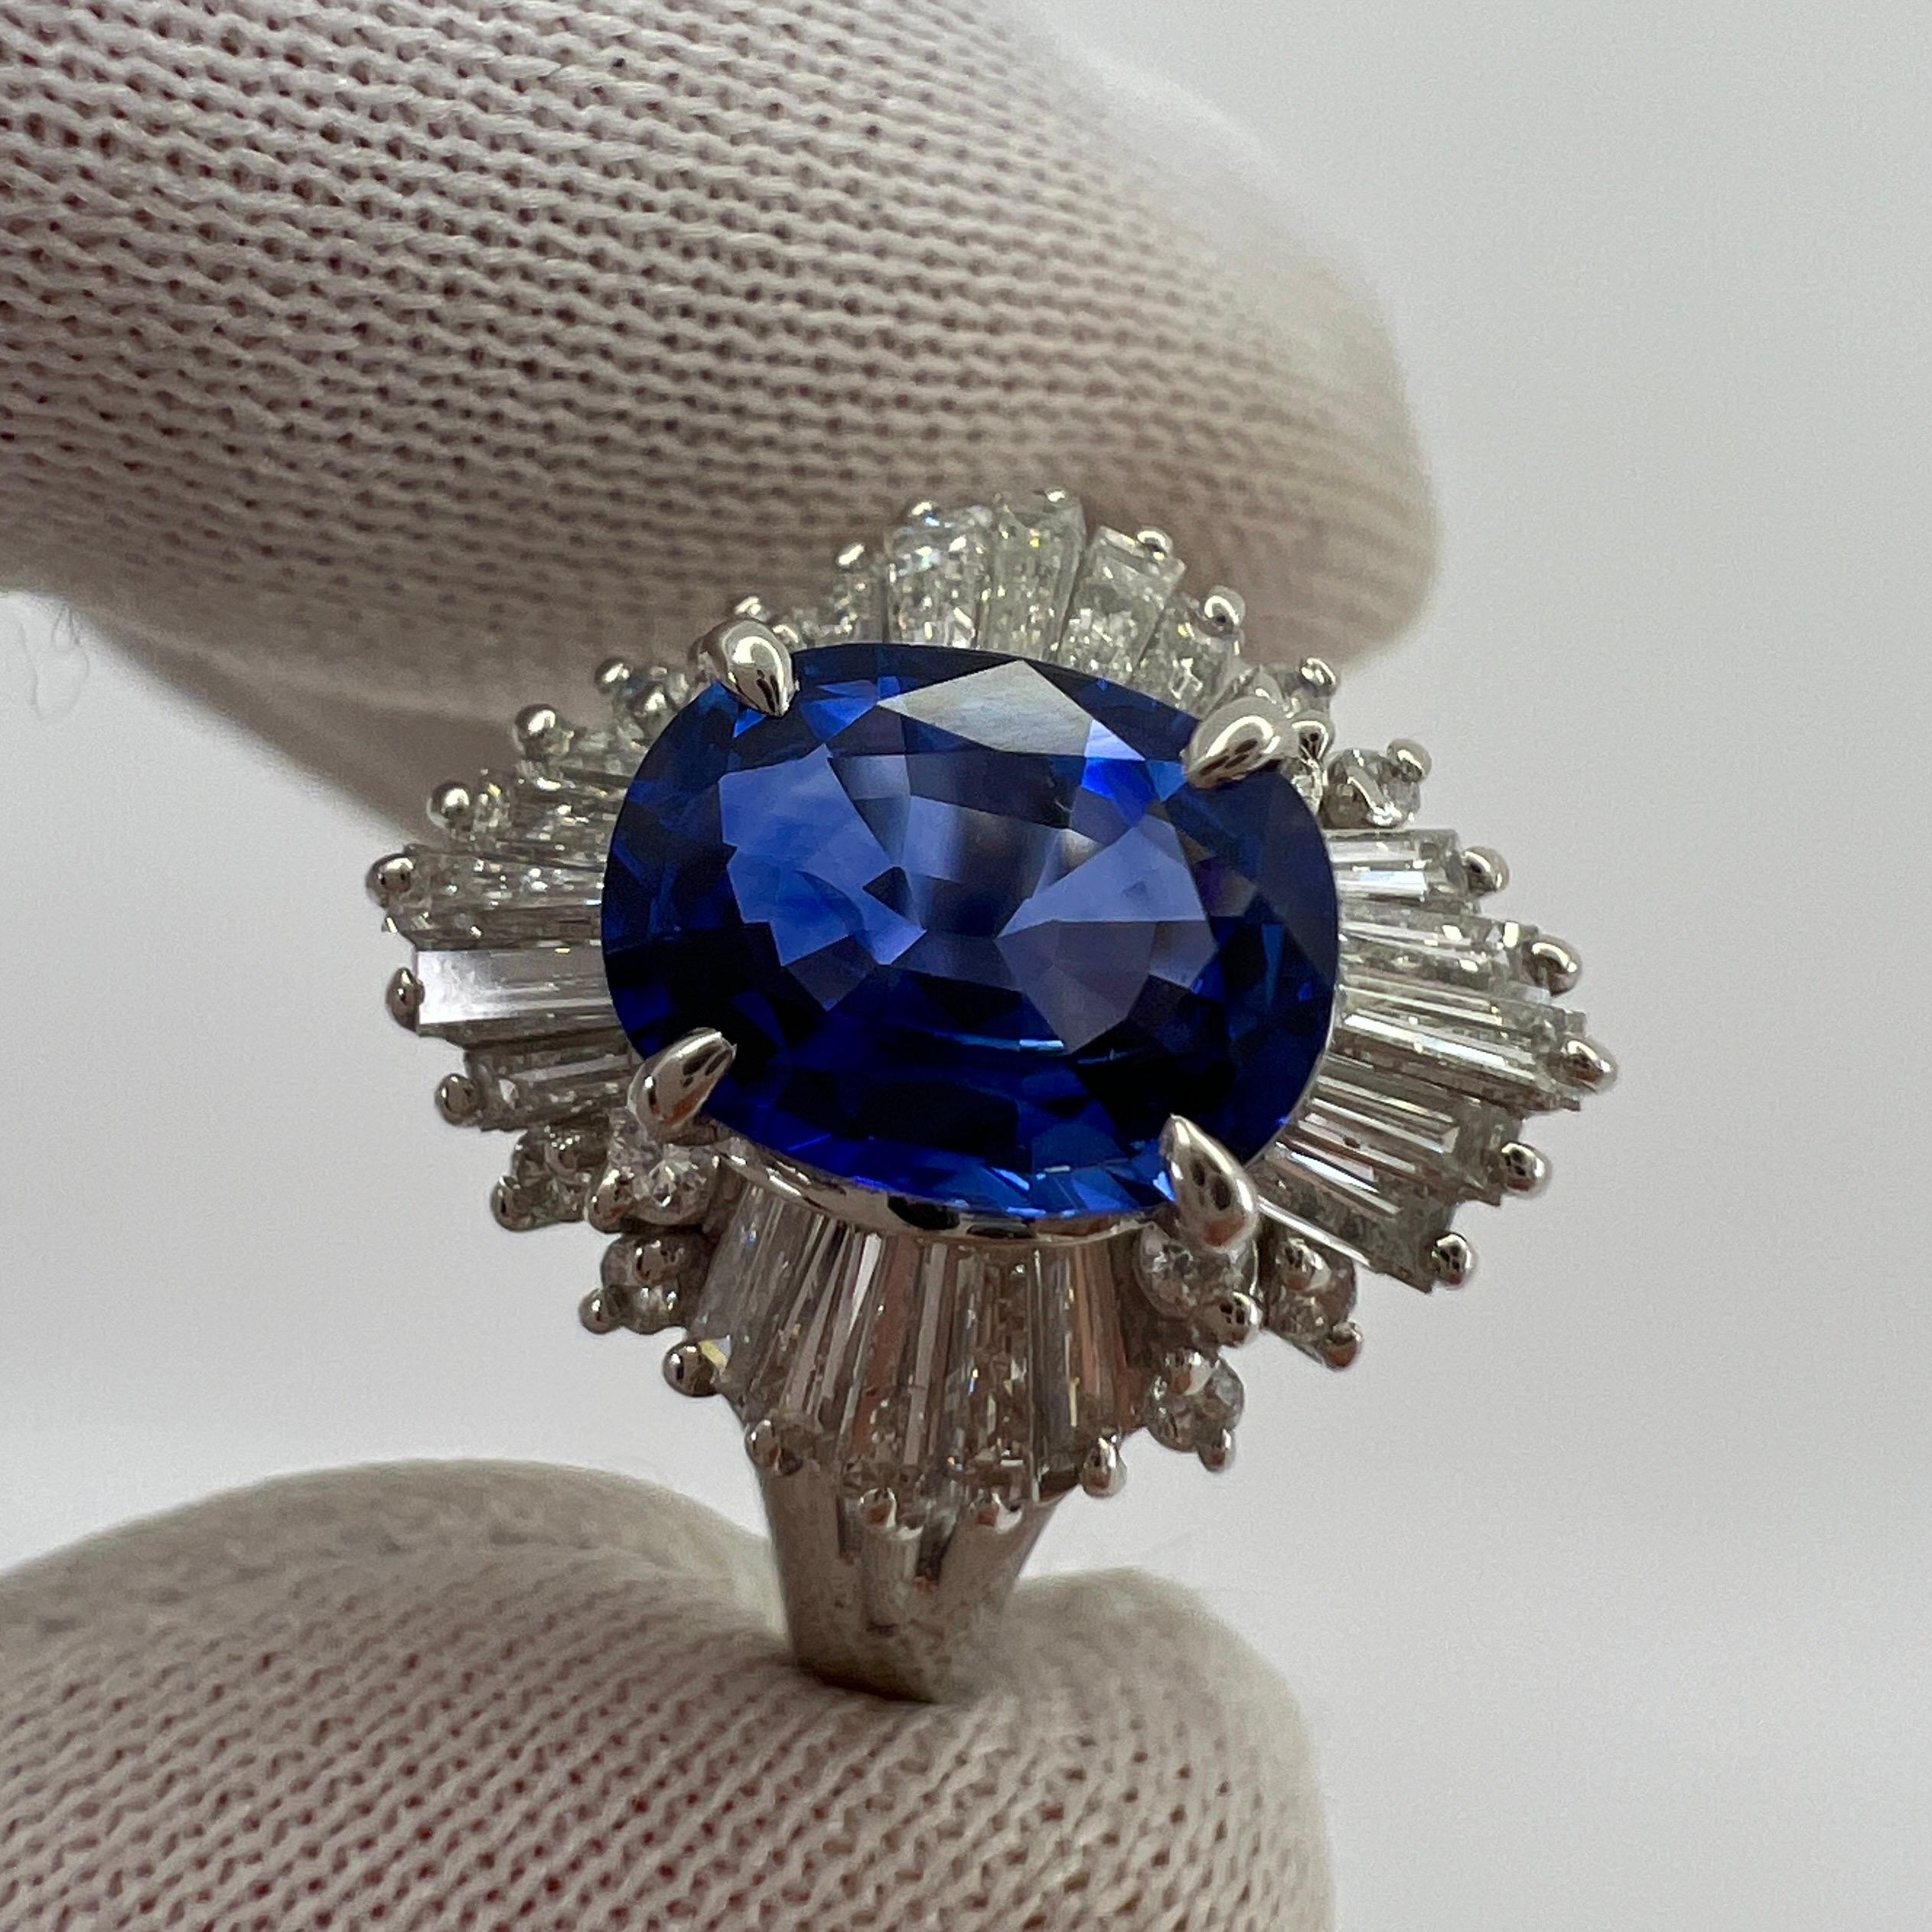 Feiner blauer Ceylon Saphir & Diamant Platin Cocktail  Ballerina-Ring.

2.06 Karat Gesamtgewicht. 1.32 Karat Ceylon-Saphir mit einer atemberaubenden lebhaften blauen Farbe und ausgezeichneter Klarheit. Sehr sauberer Stein. Hat auch einen sehr guten